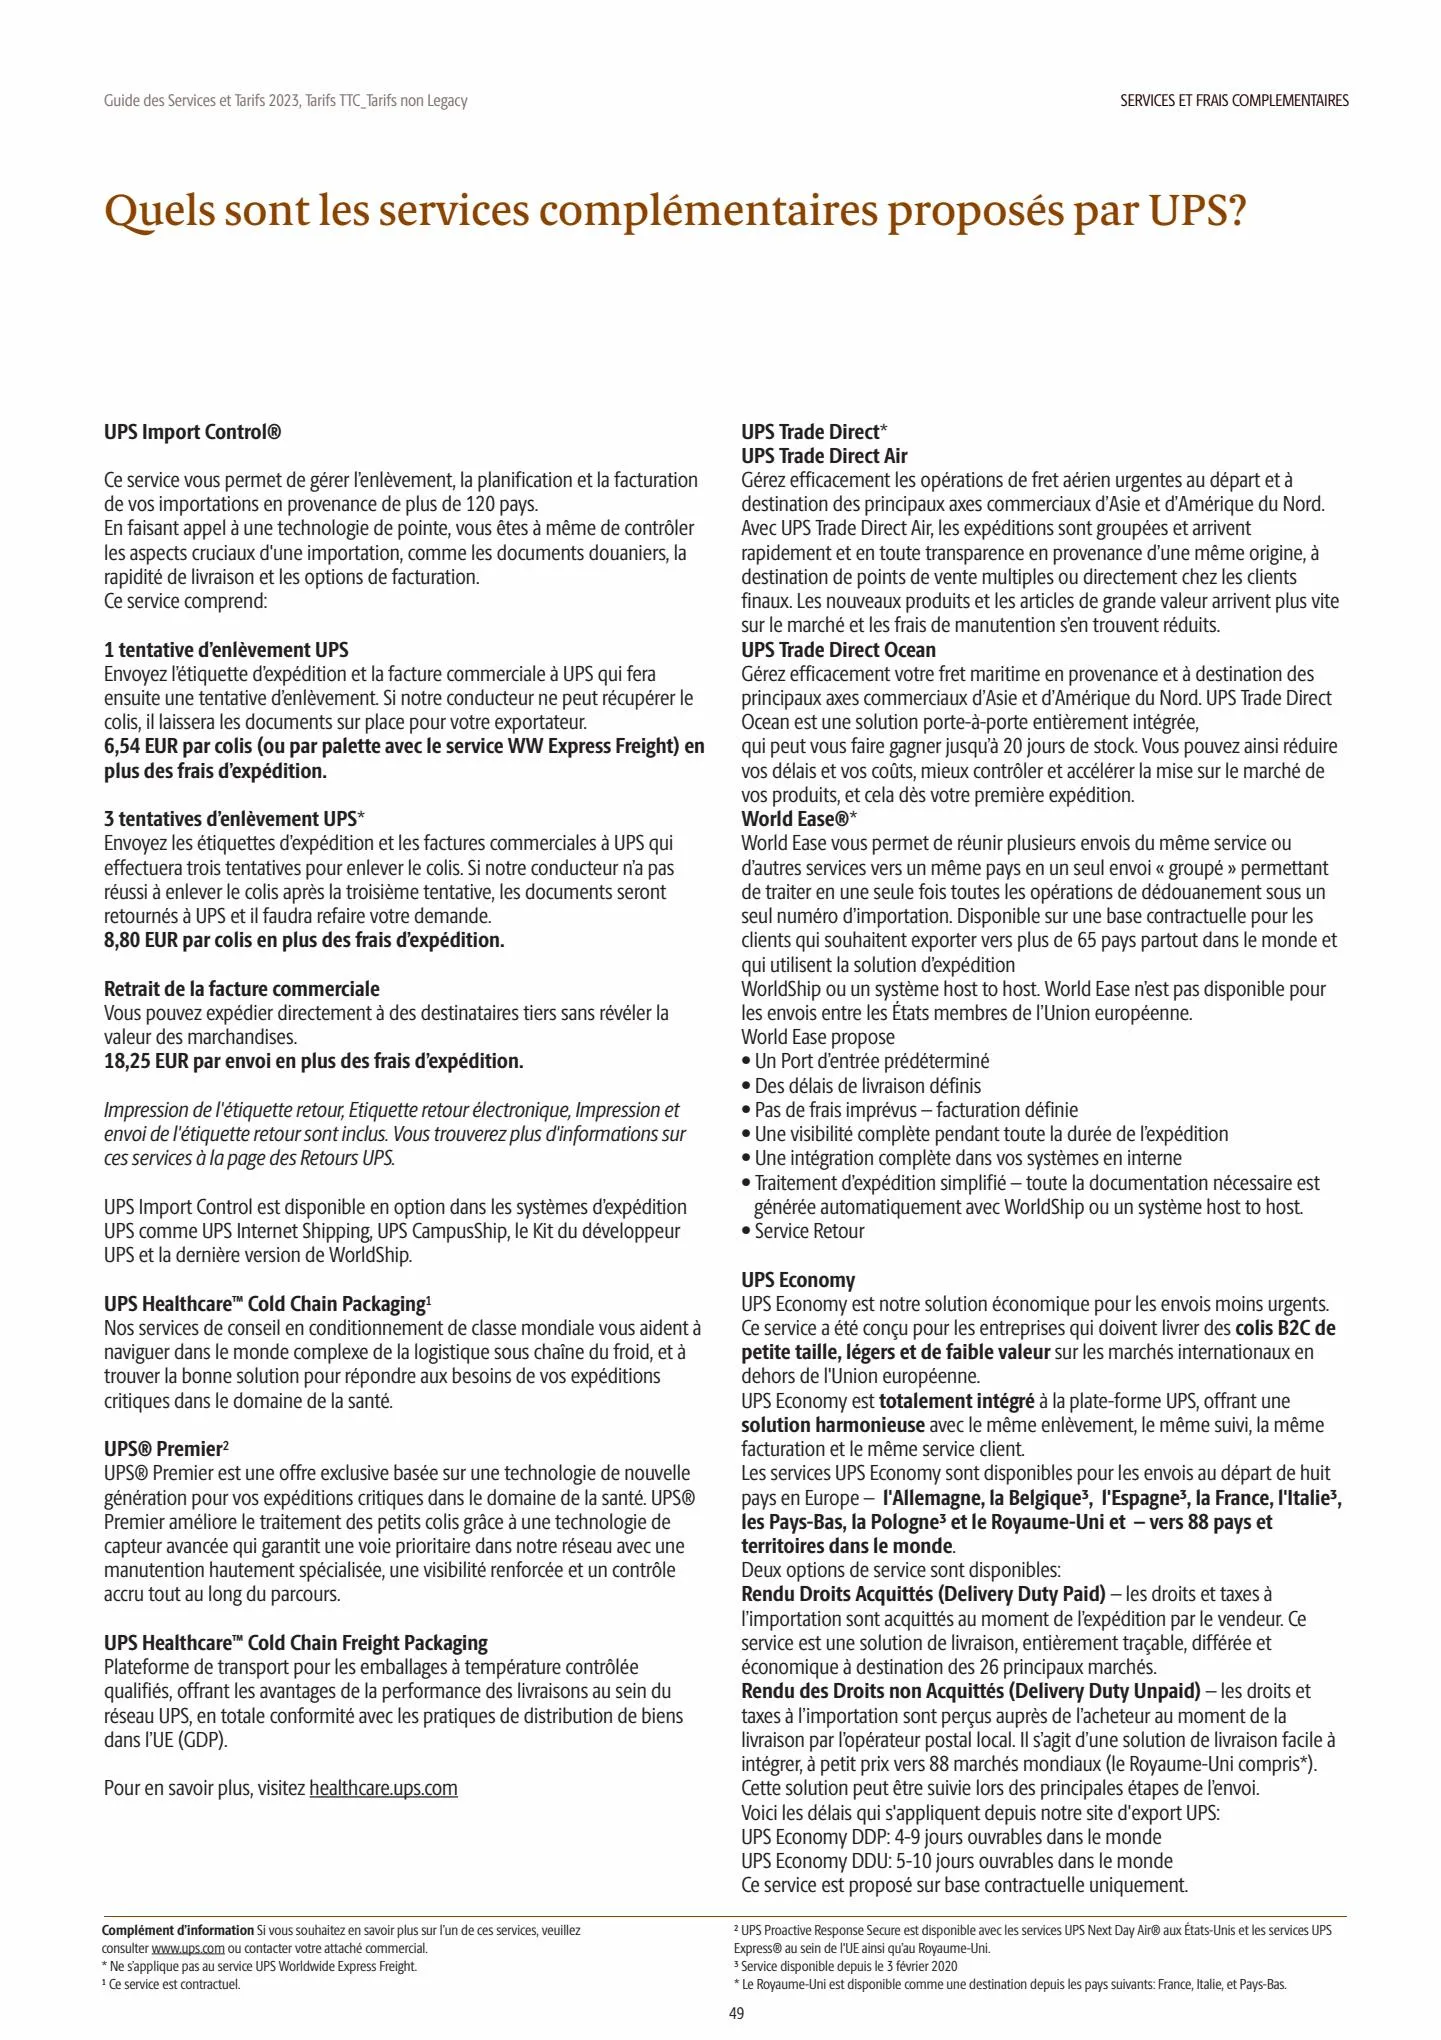 Catalogue Guide des Services et Tarifs 2023, page 00049